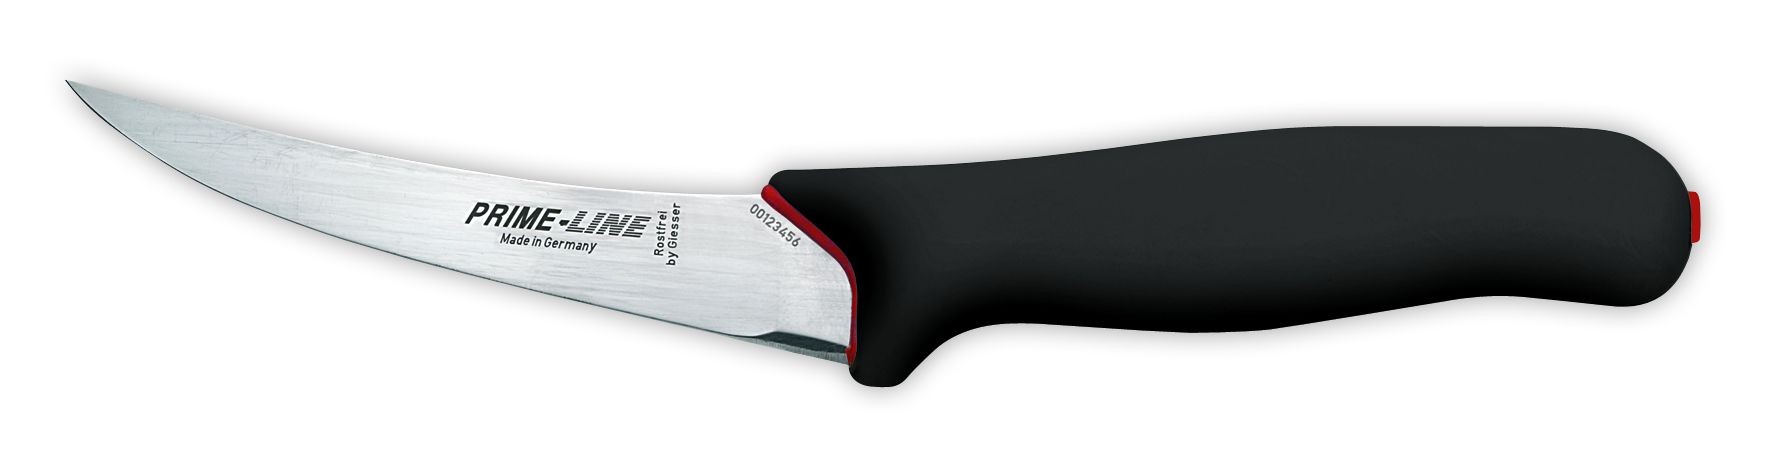 Обвалочный нож PrimeLine 11251, жесткий, 13 см,  черная рукоятка